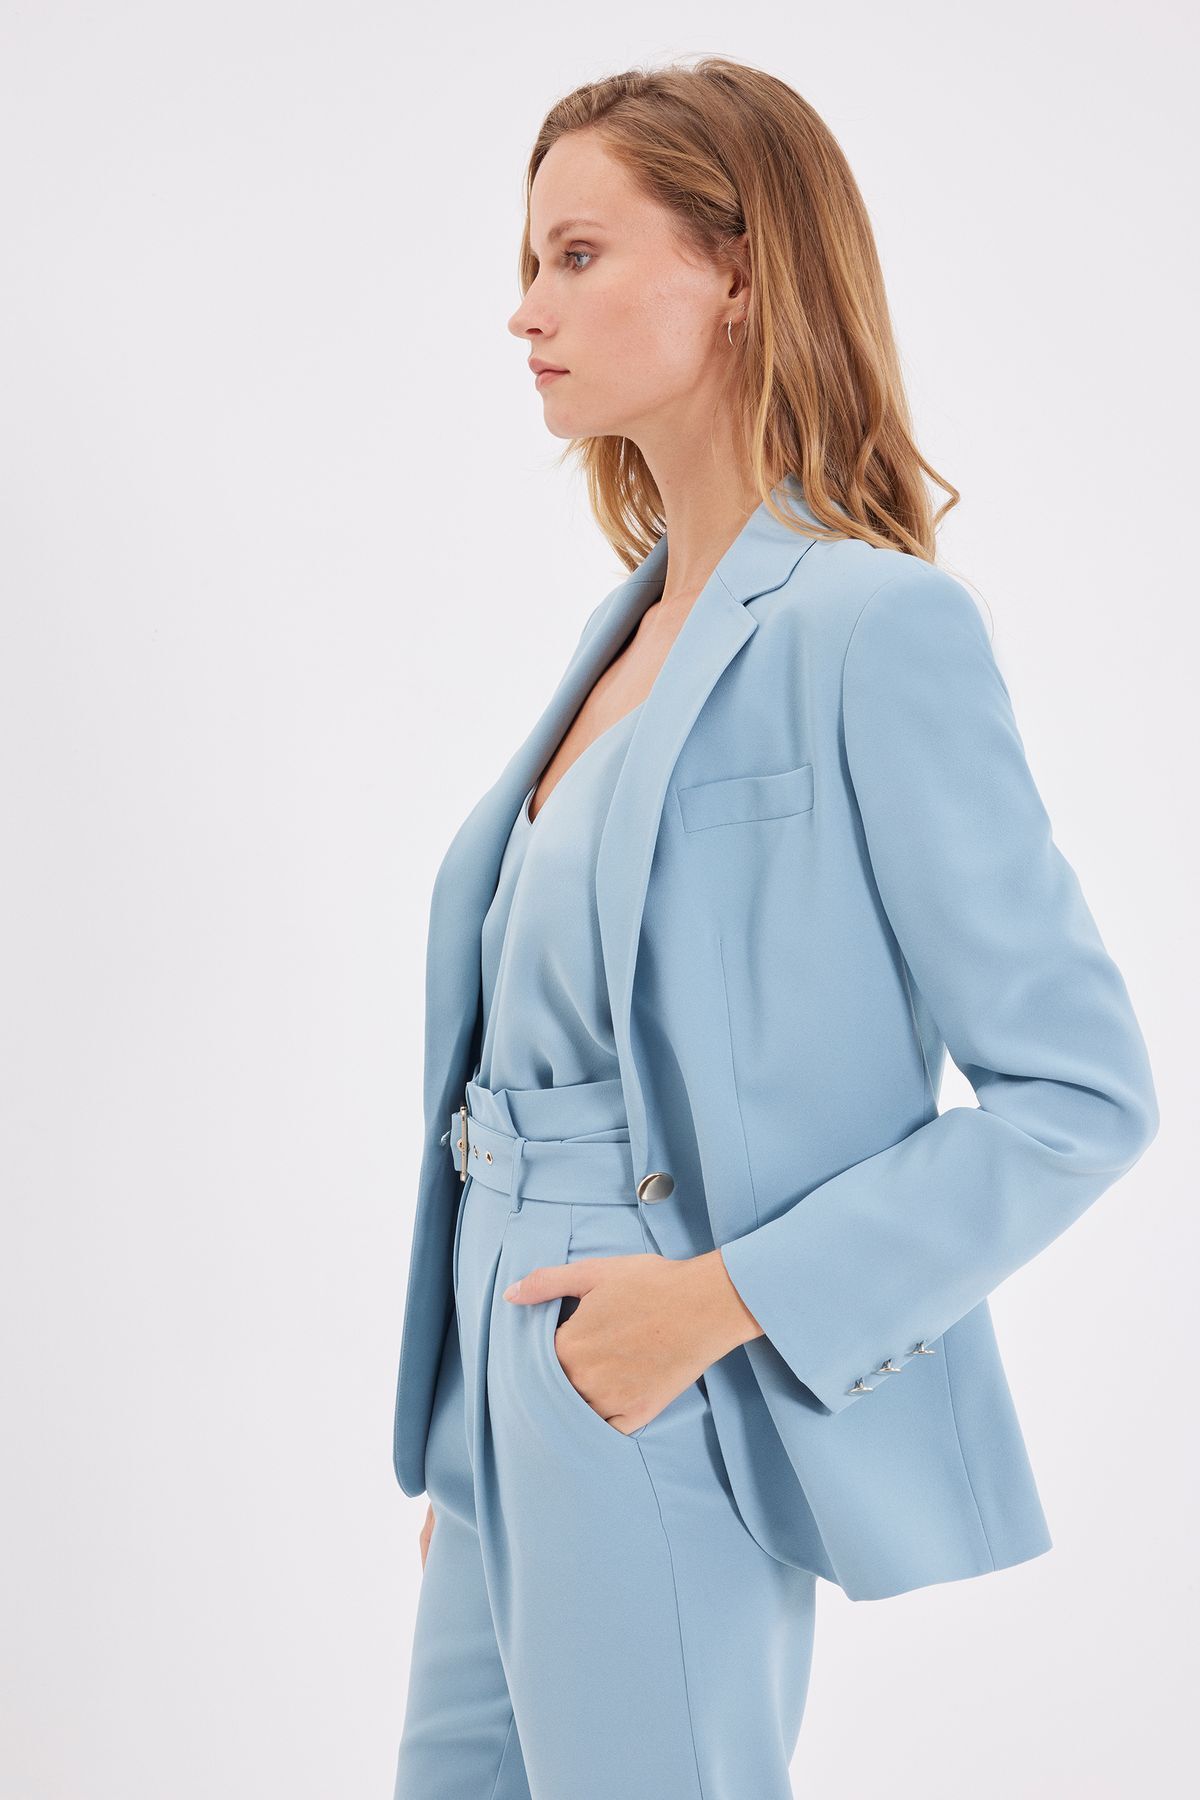 Karaca Kadın Ceket-Mavi